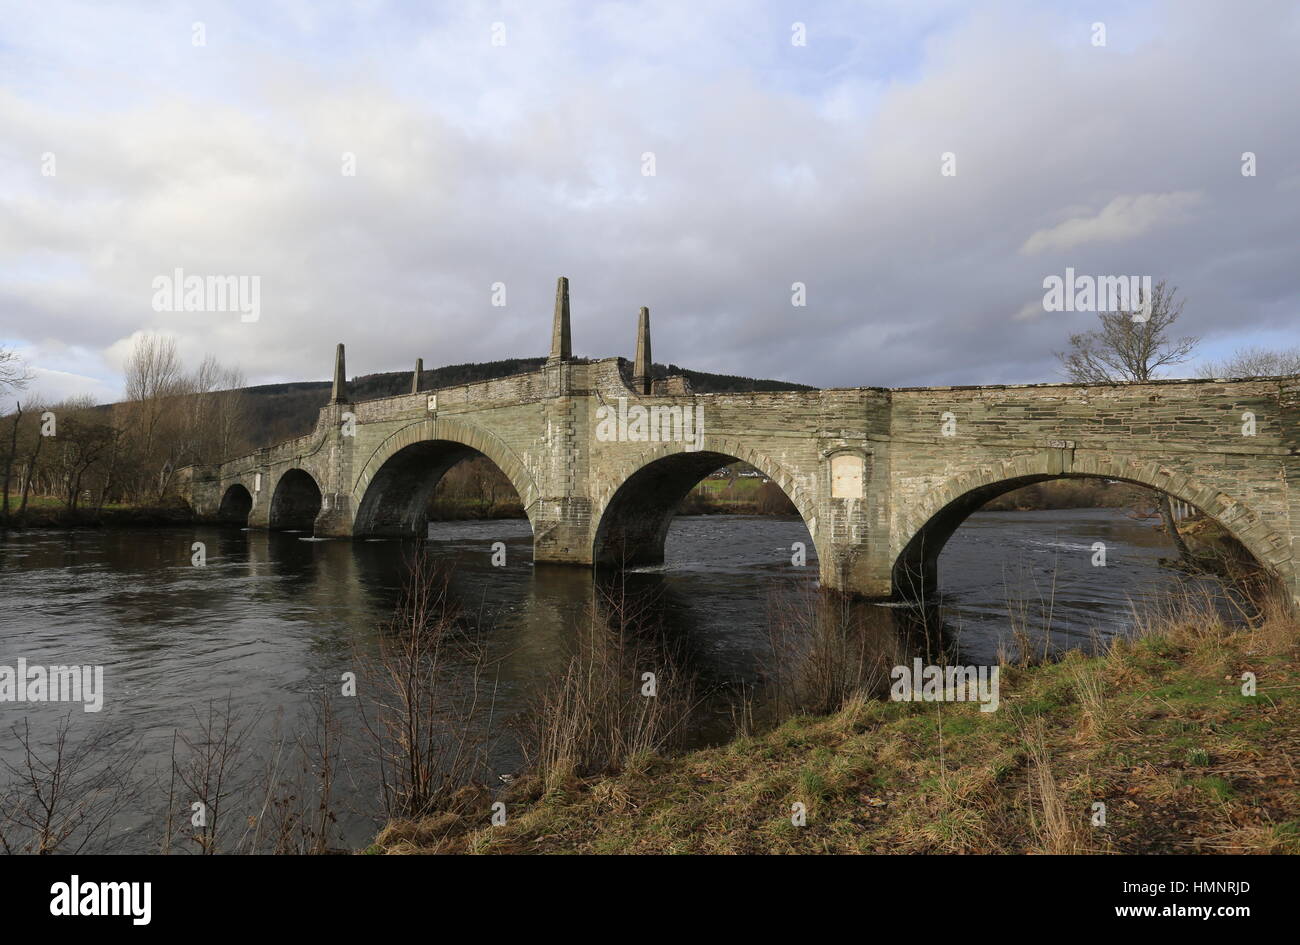 Le Général Wade's bridge sur la rivière Tay en Écosse aberfeldy février 2017 Banque D'Images